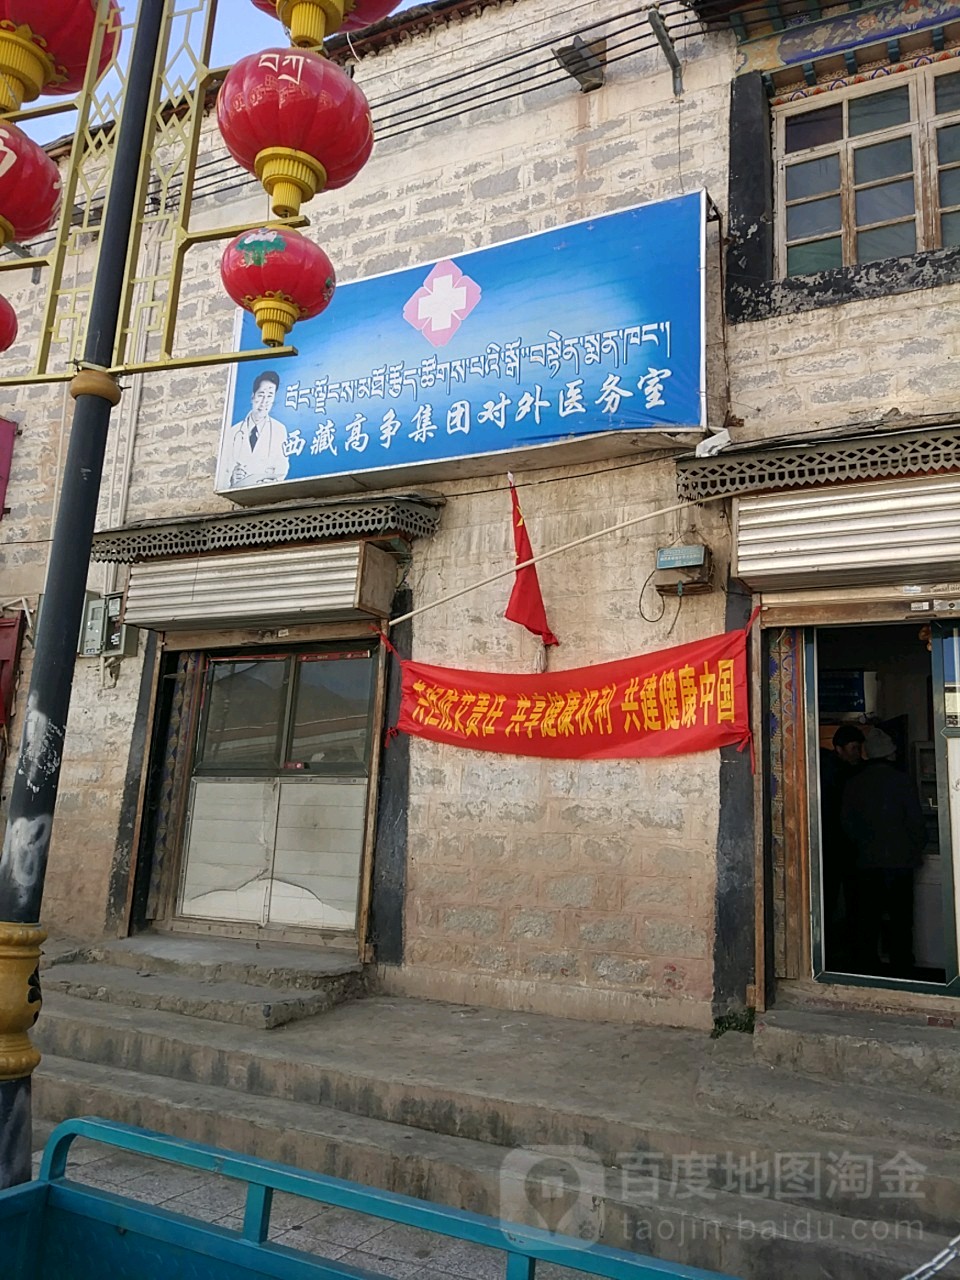 西藏高爭集團對外醫務室